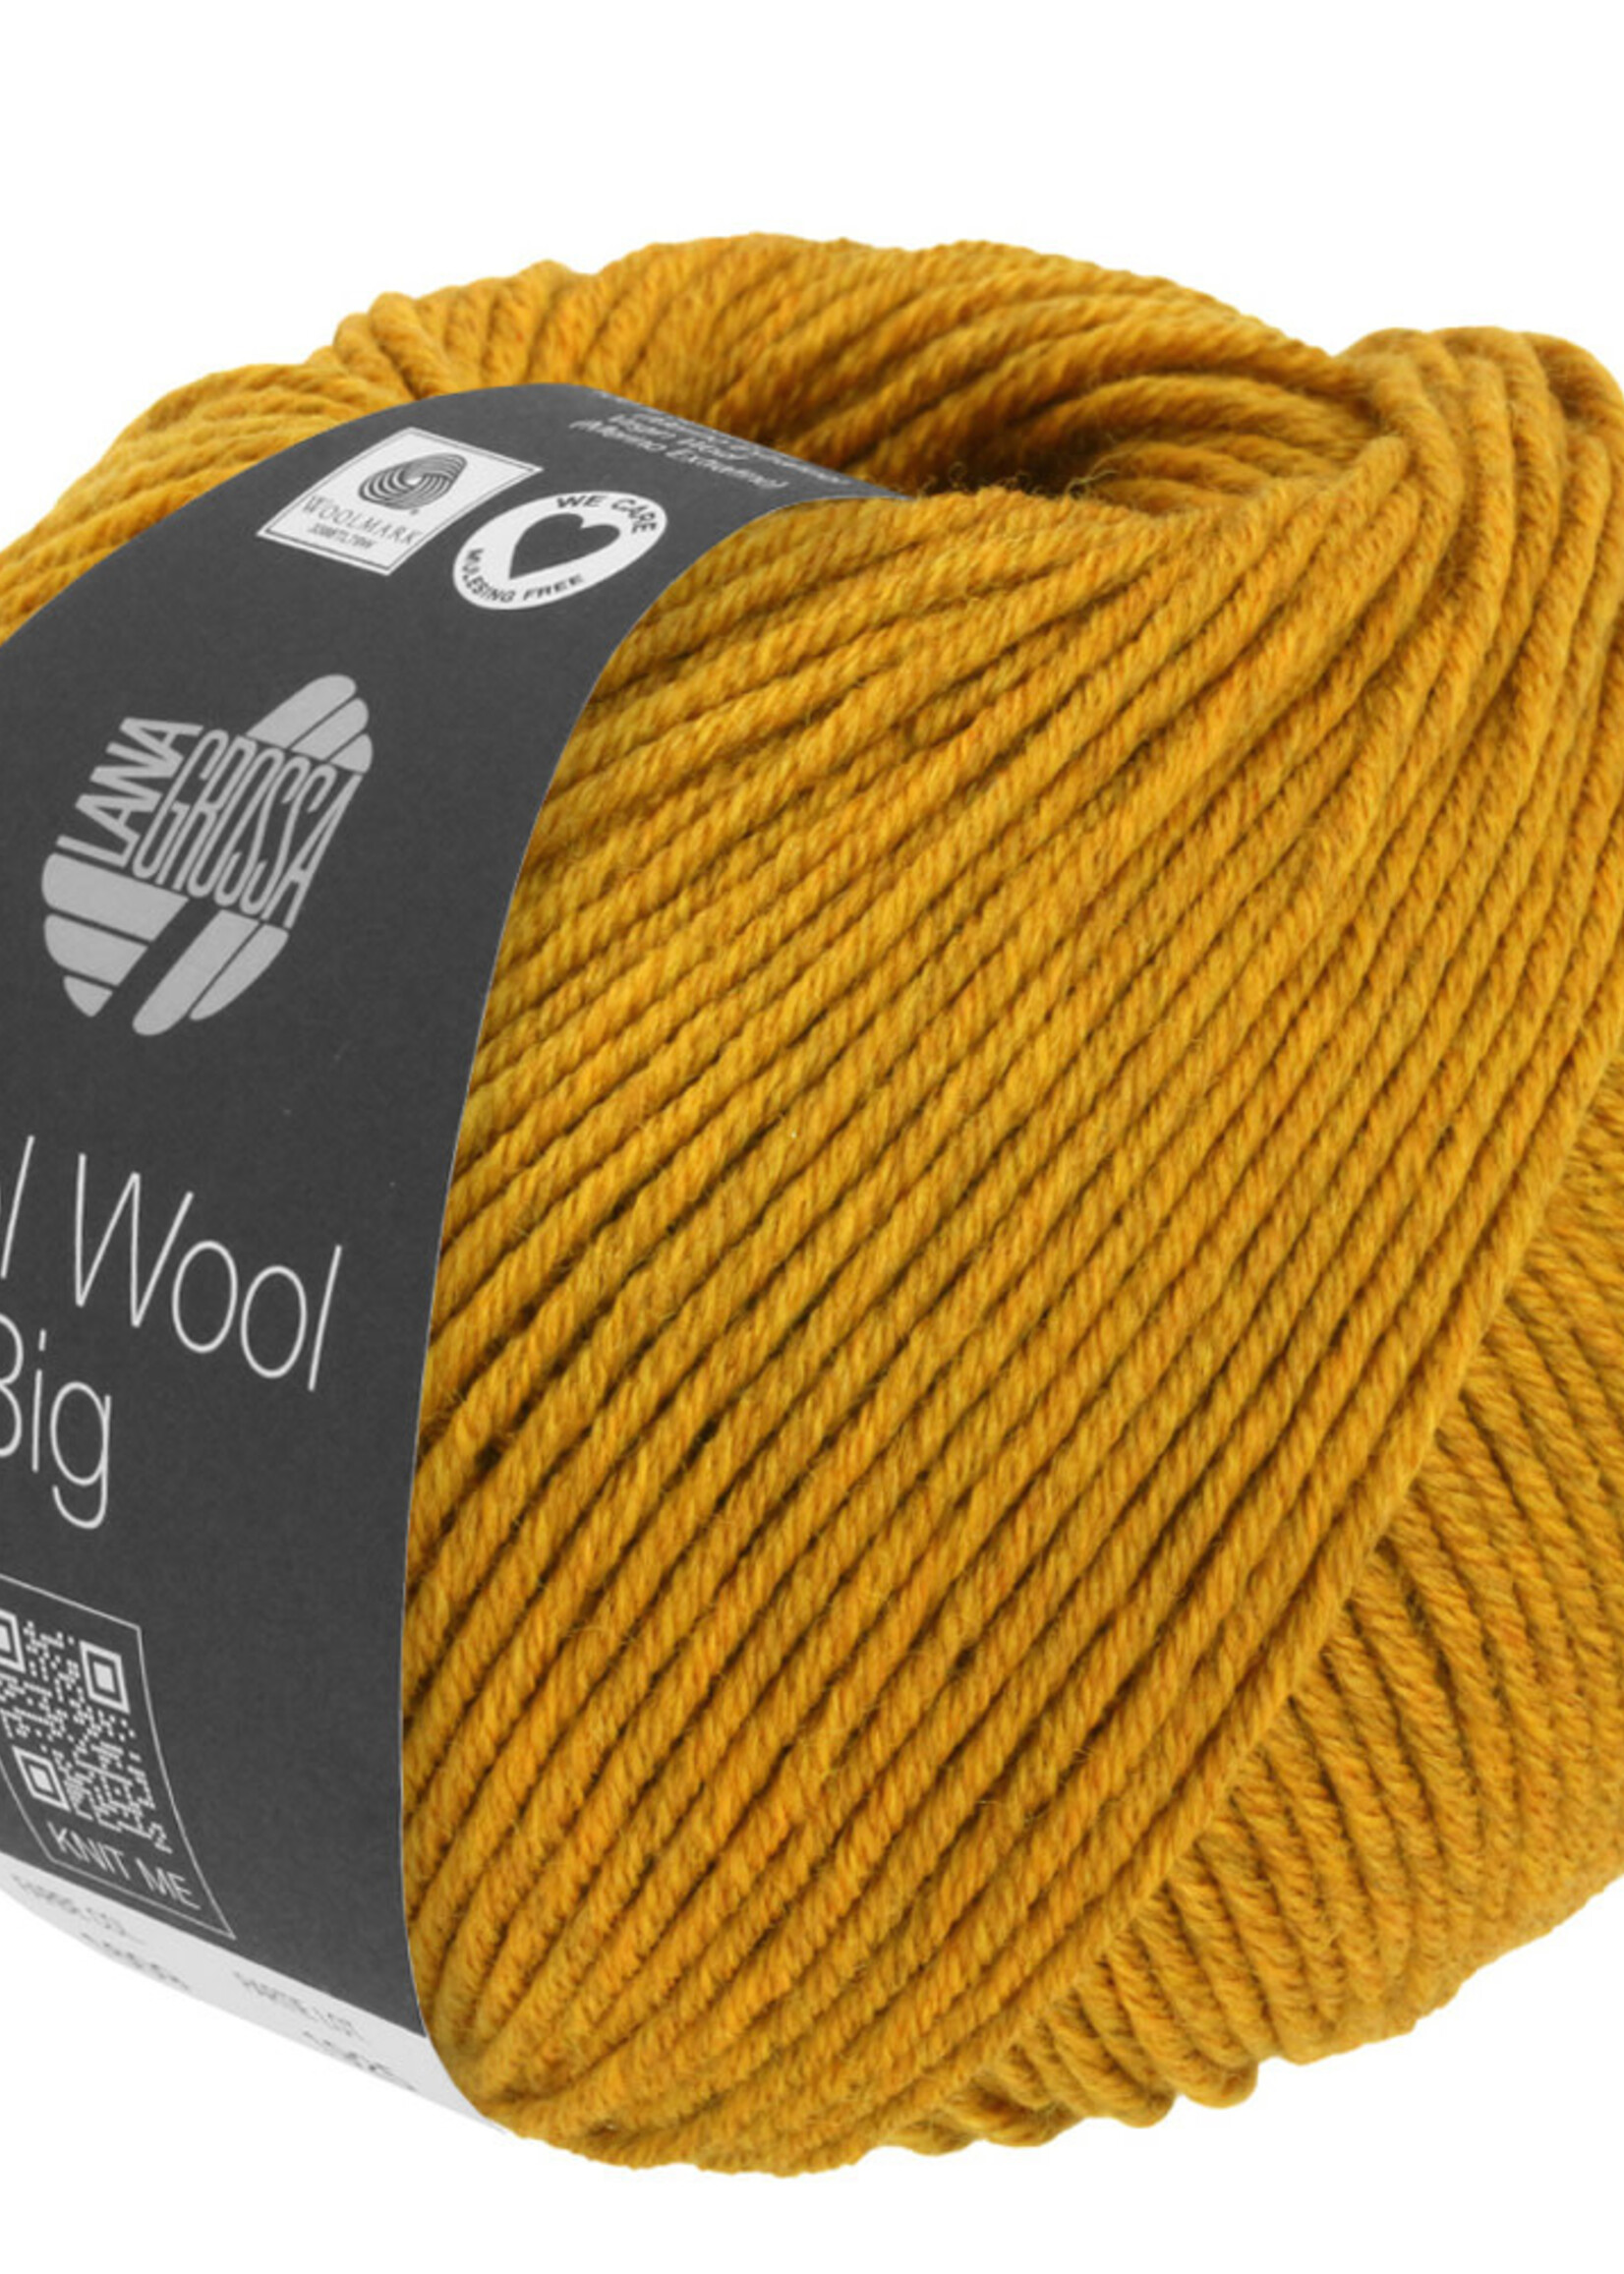 Lana Grossa Cool Wool Big - Lana Grossa 1609-mosterd geel